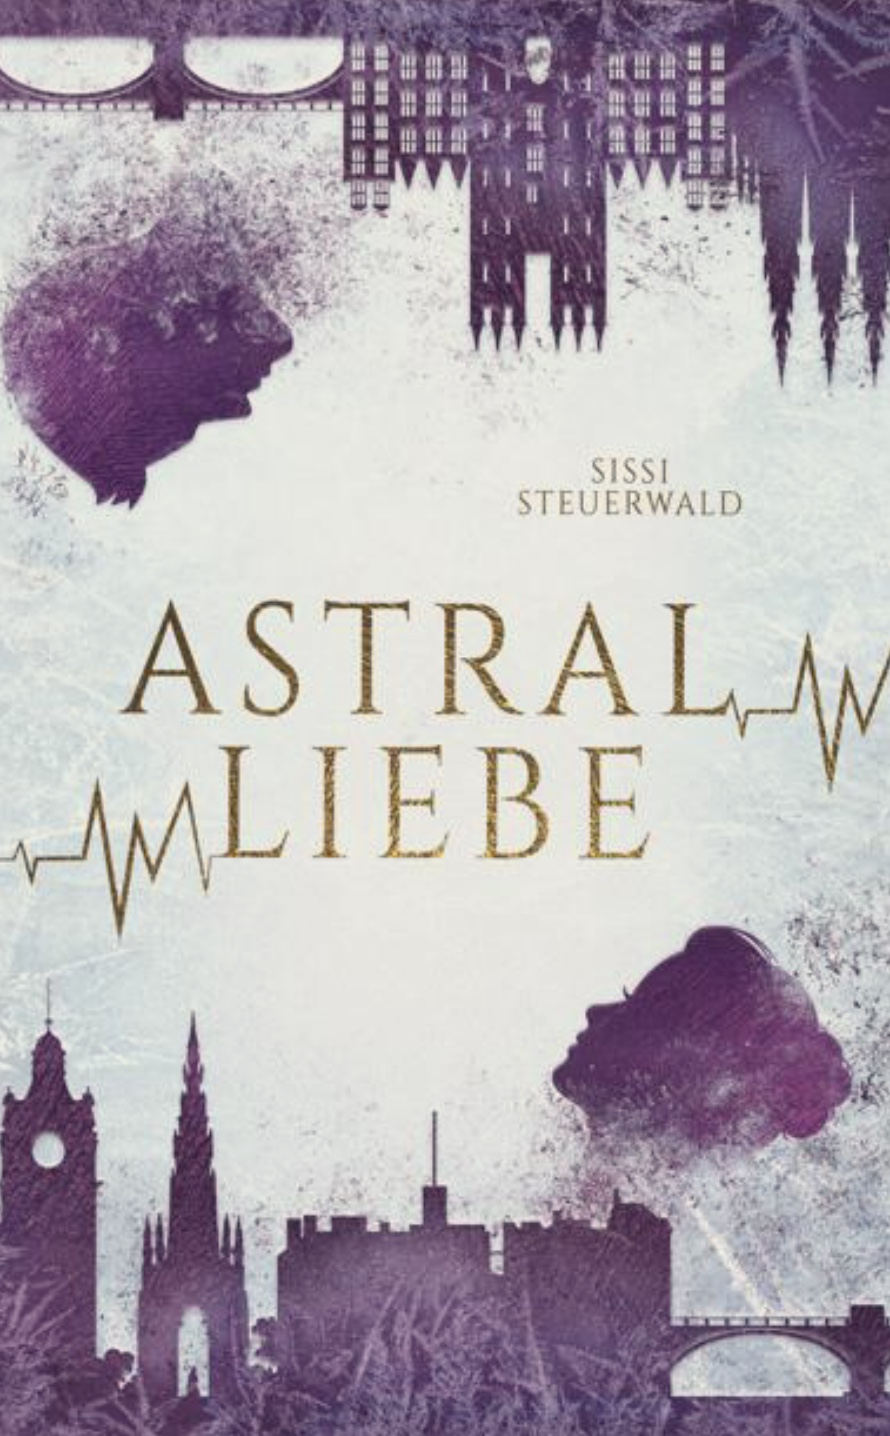 Das neue winterliche Romantasy-Highlight "Astralliebe" von Sissi Steuerwald.